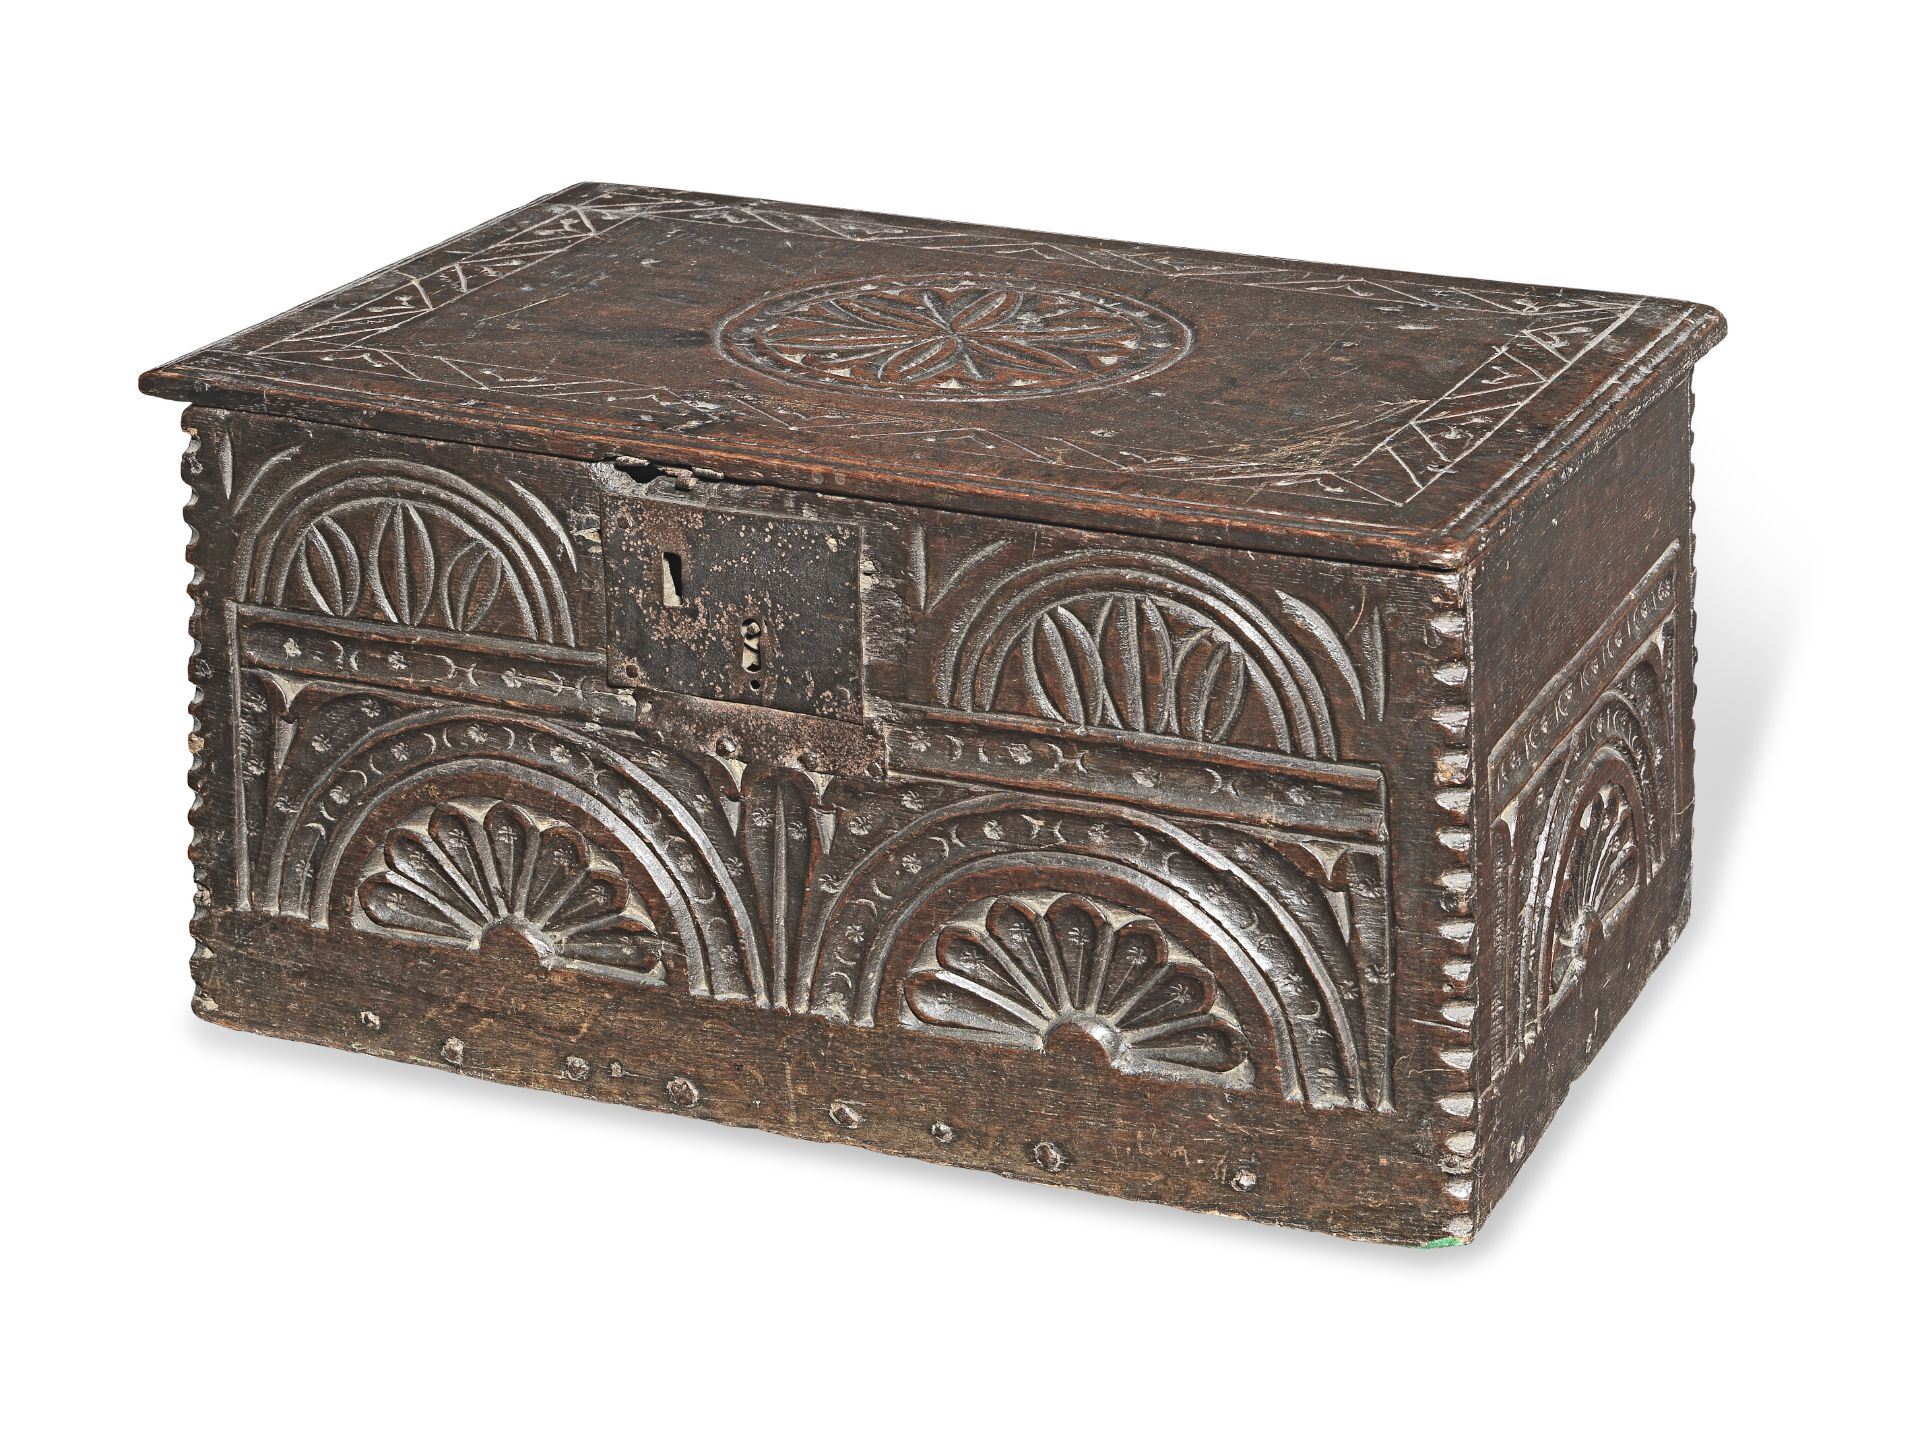 An unusual Charles II boarded oak box, circa 1660